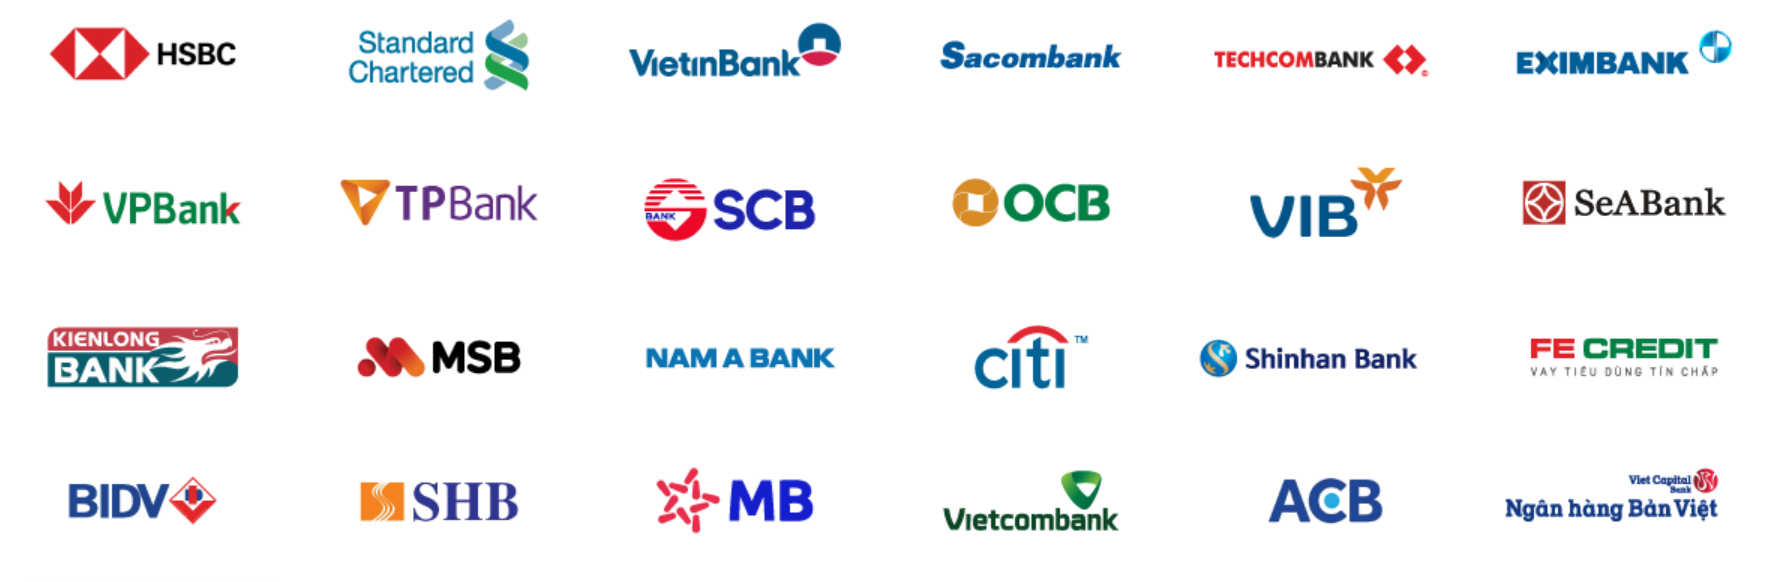 Samick liên kết thanh toán nhanh chóng với nhiều ngân hàng phổ biến trên thị trường